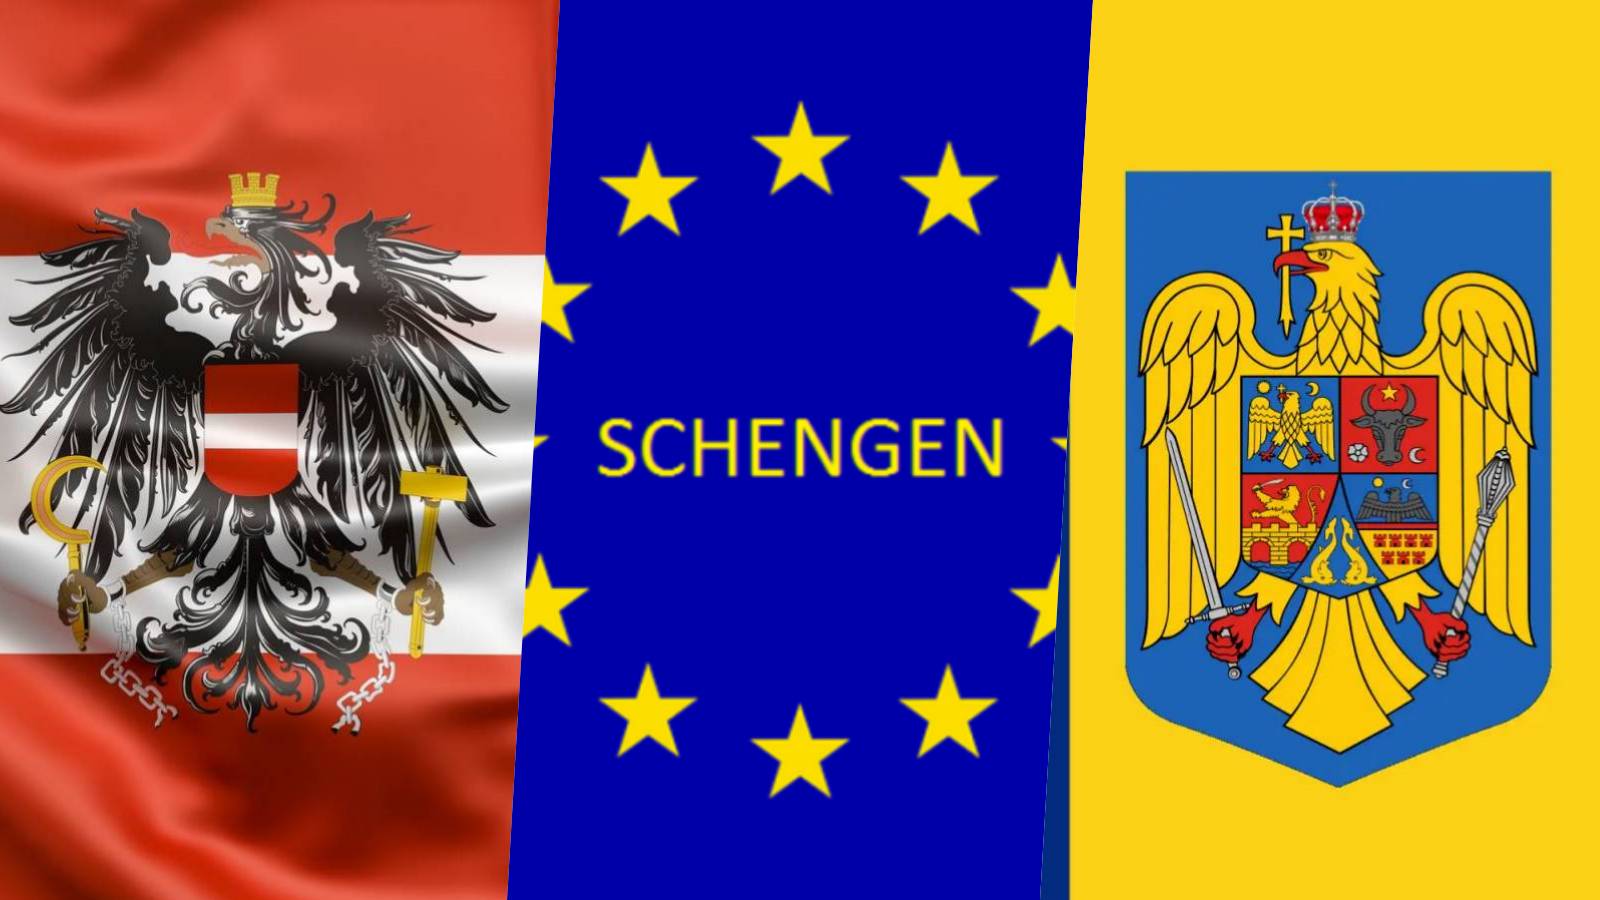 Información oficial de Austria ÚLTIMO MOMENTO Cuando Rumania se une a Schengen el 31 de marzo